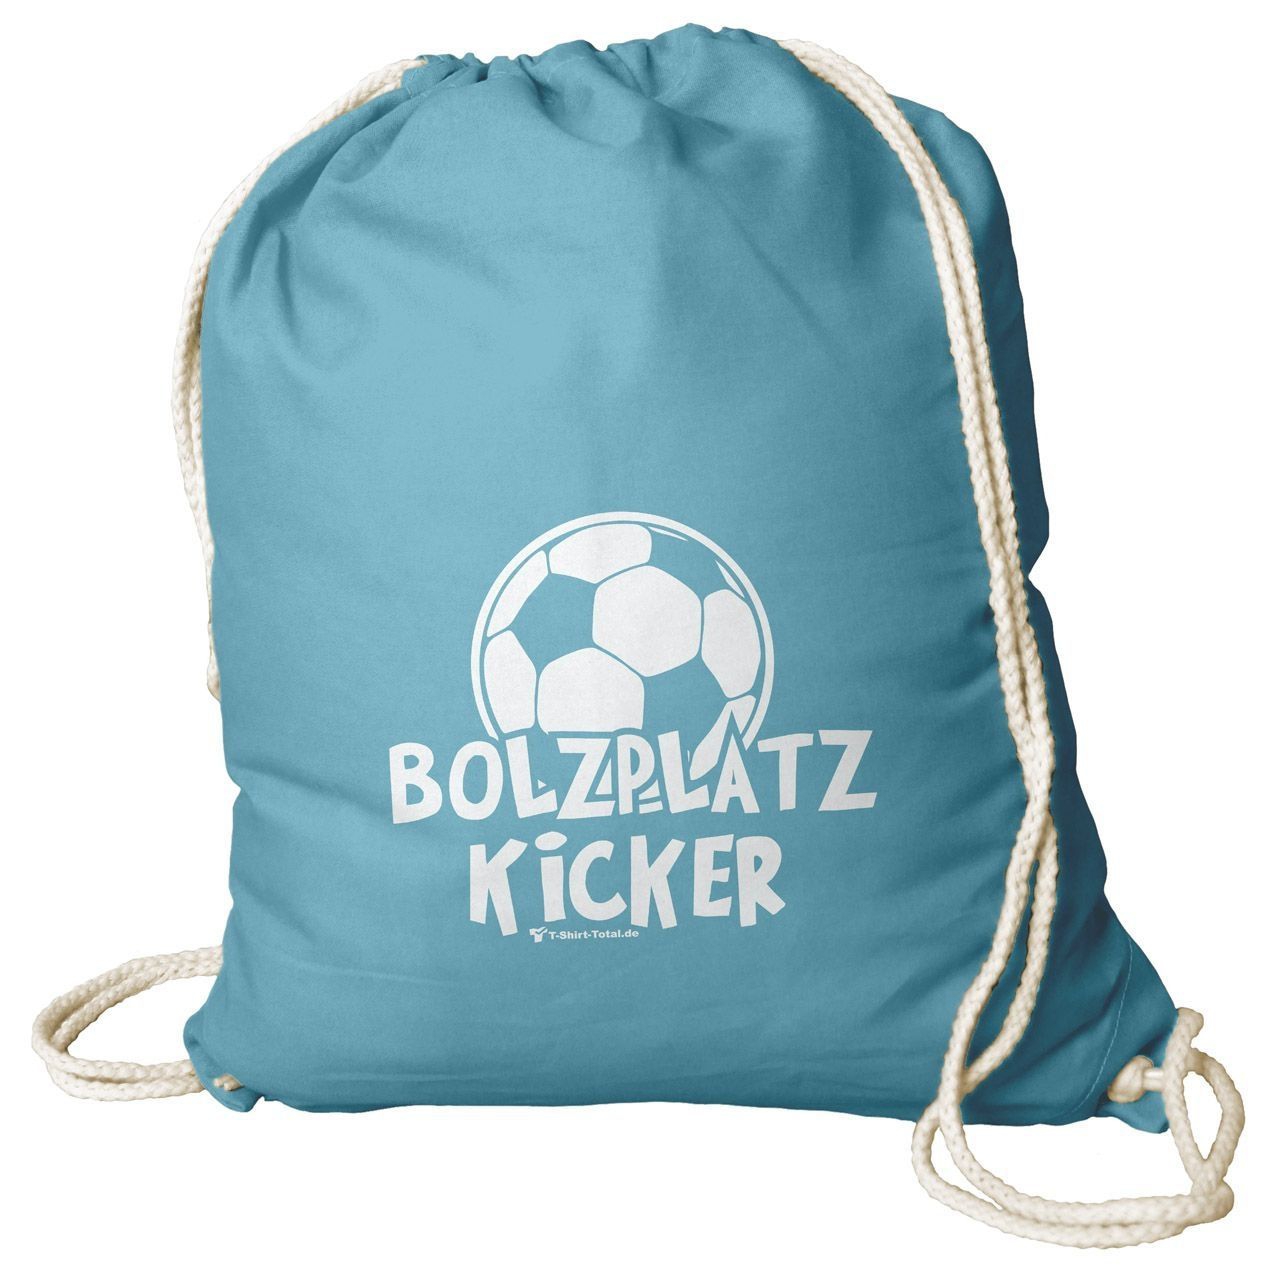 Bolzplatz Kicker Rucksack Beutel türkis